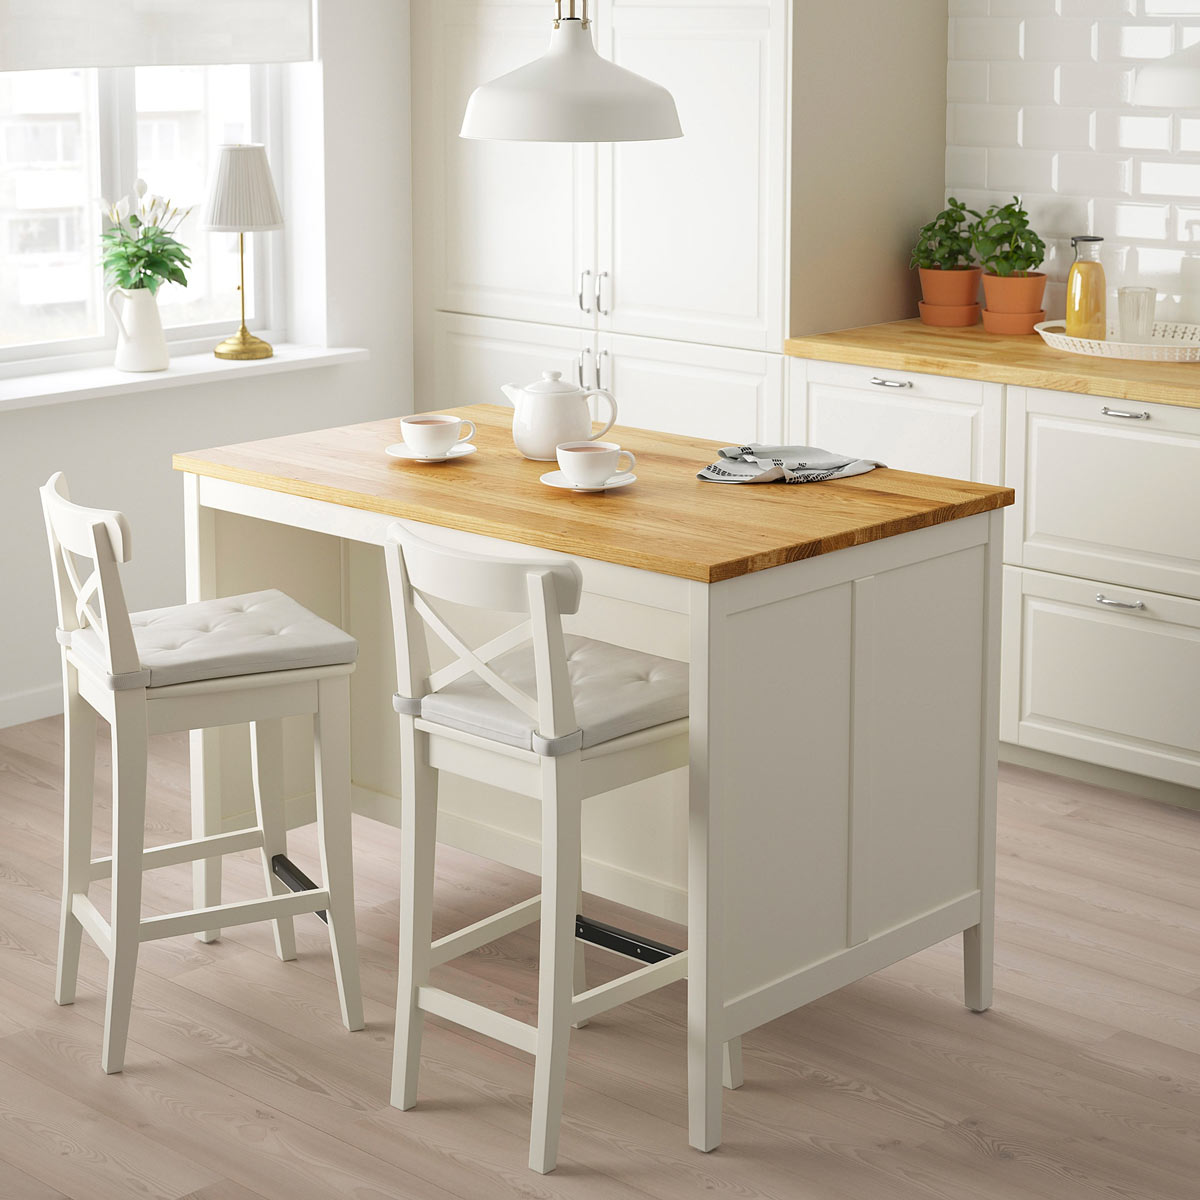 Isola per la cucina color bianco con top legno chiaro modello TORNVIKEN IKEA.